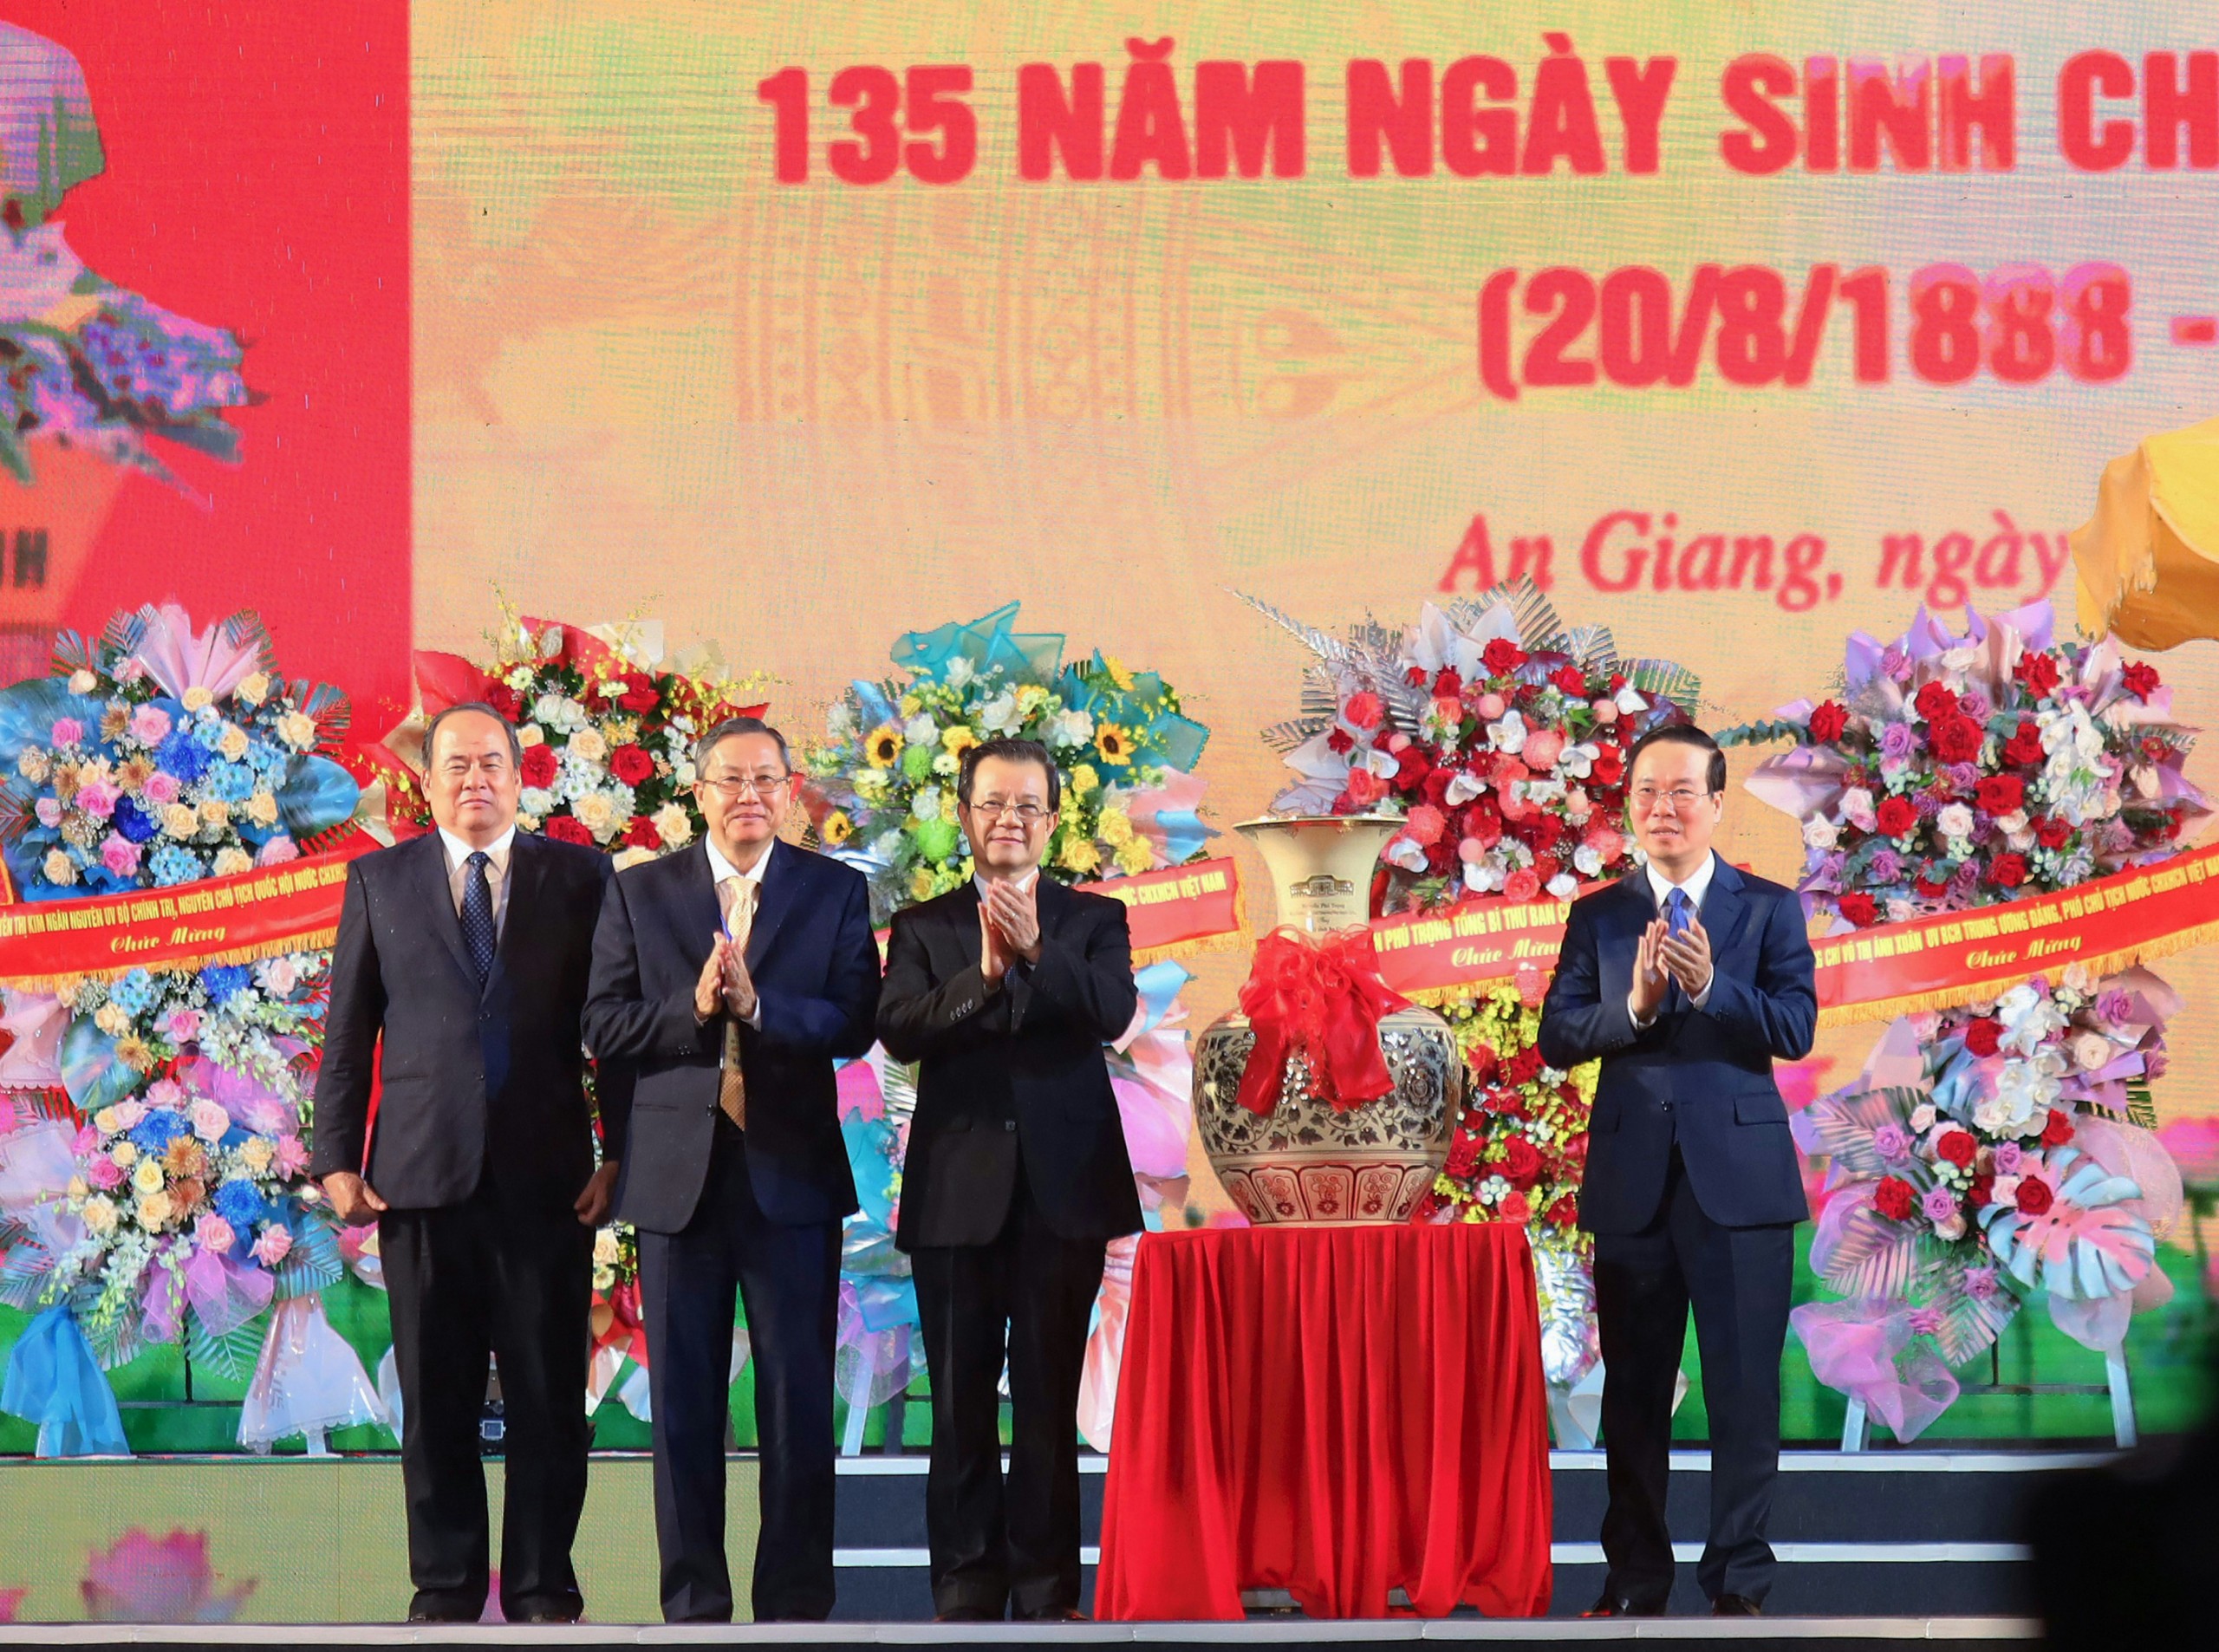 Chủ tịch nước Võ Văn Thưởng thừa ủy quyền của Tổng Bí thư trao quà cho Đảng bộ và nhân dân An Giang.